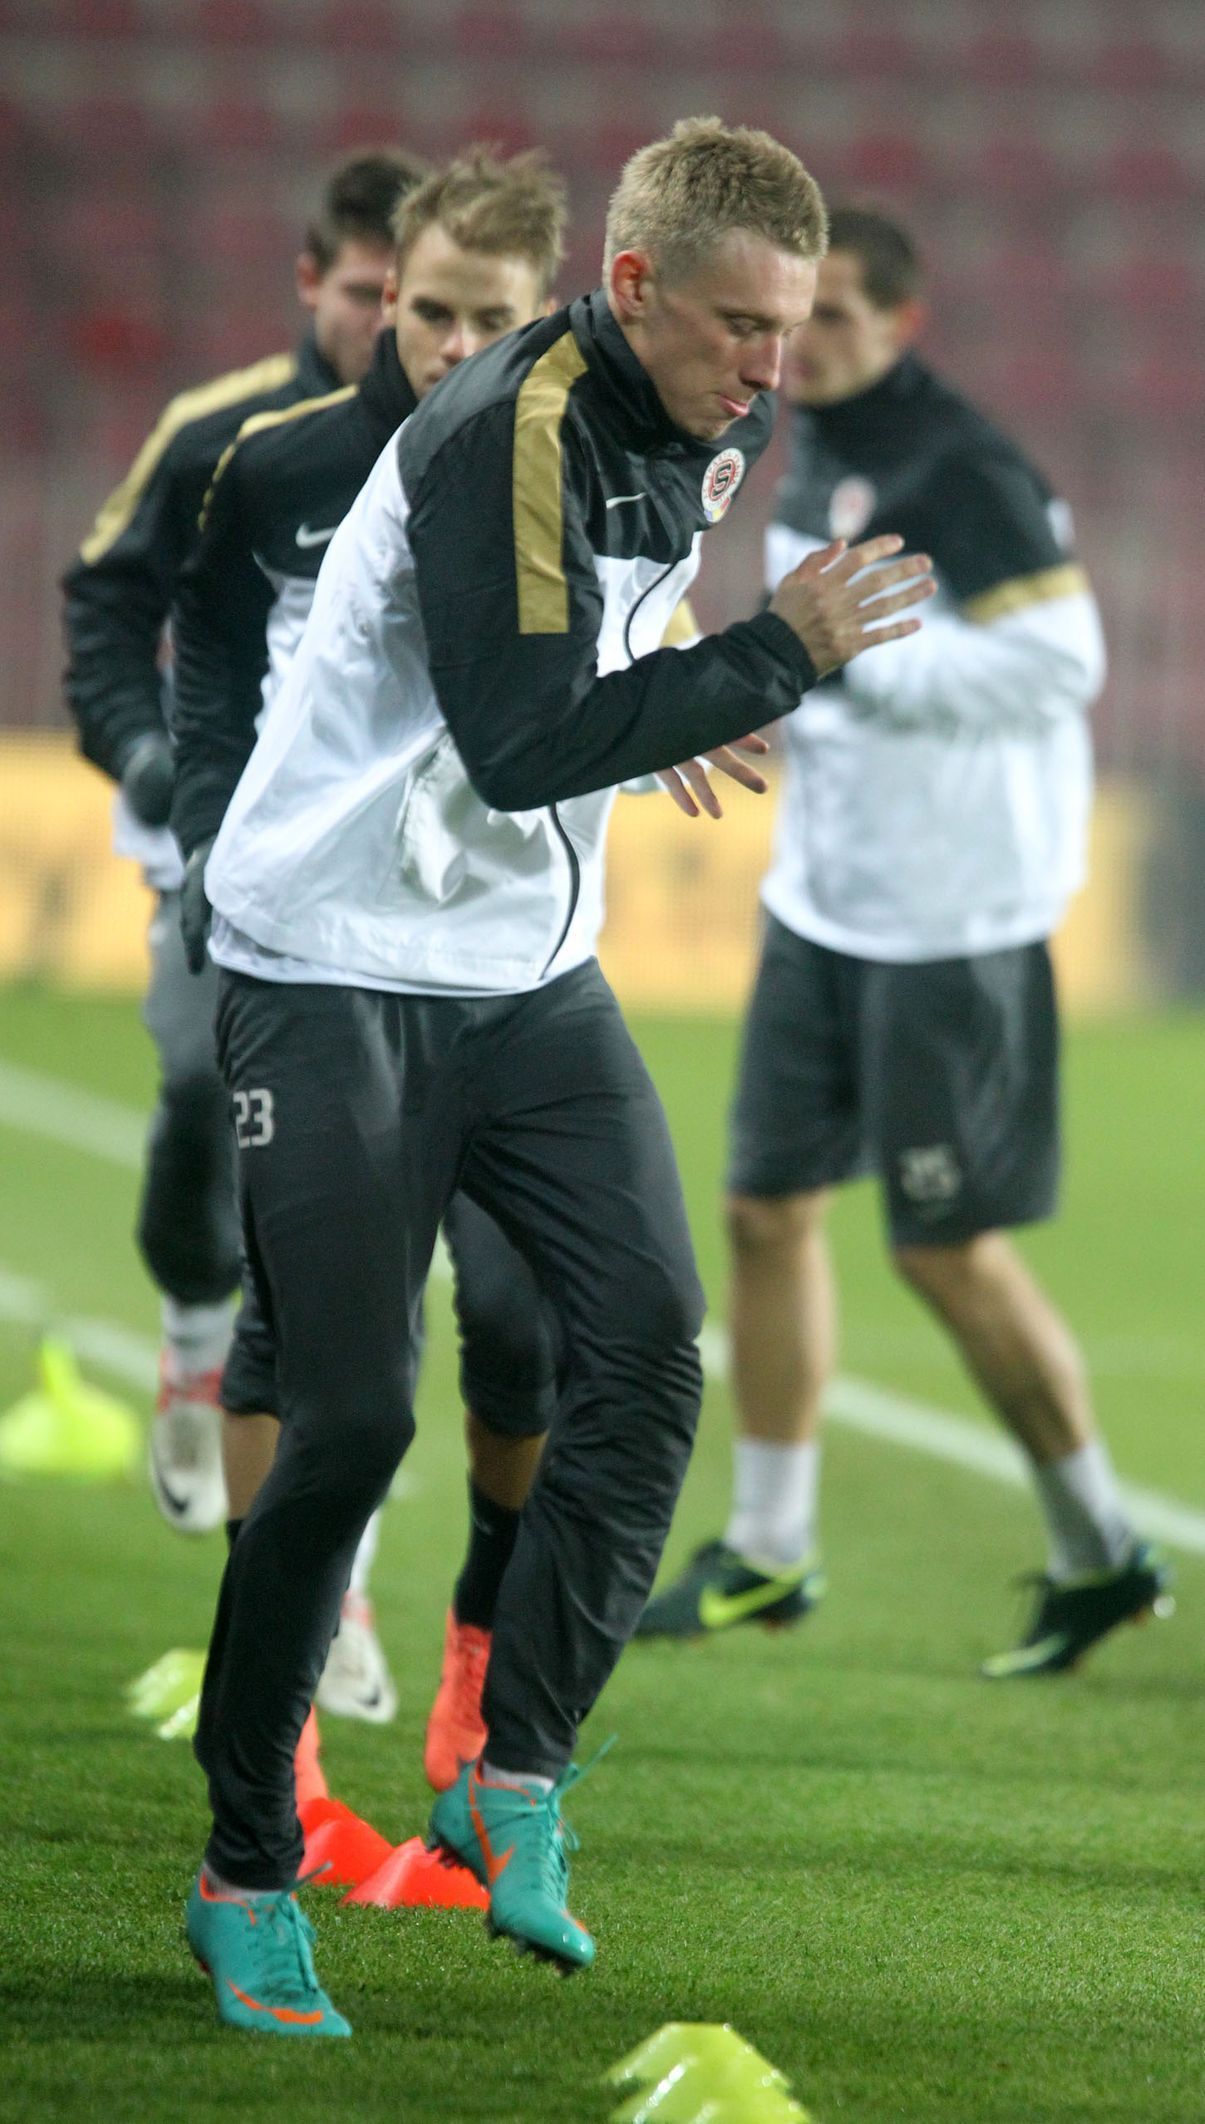 Sparťanský fotbalista Ladislav Krejčí na tréninku před utkáním Evropské ligy 2012/13 s Lyonem.